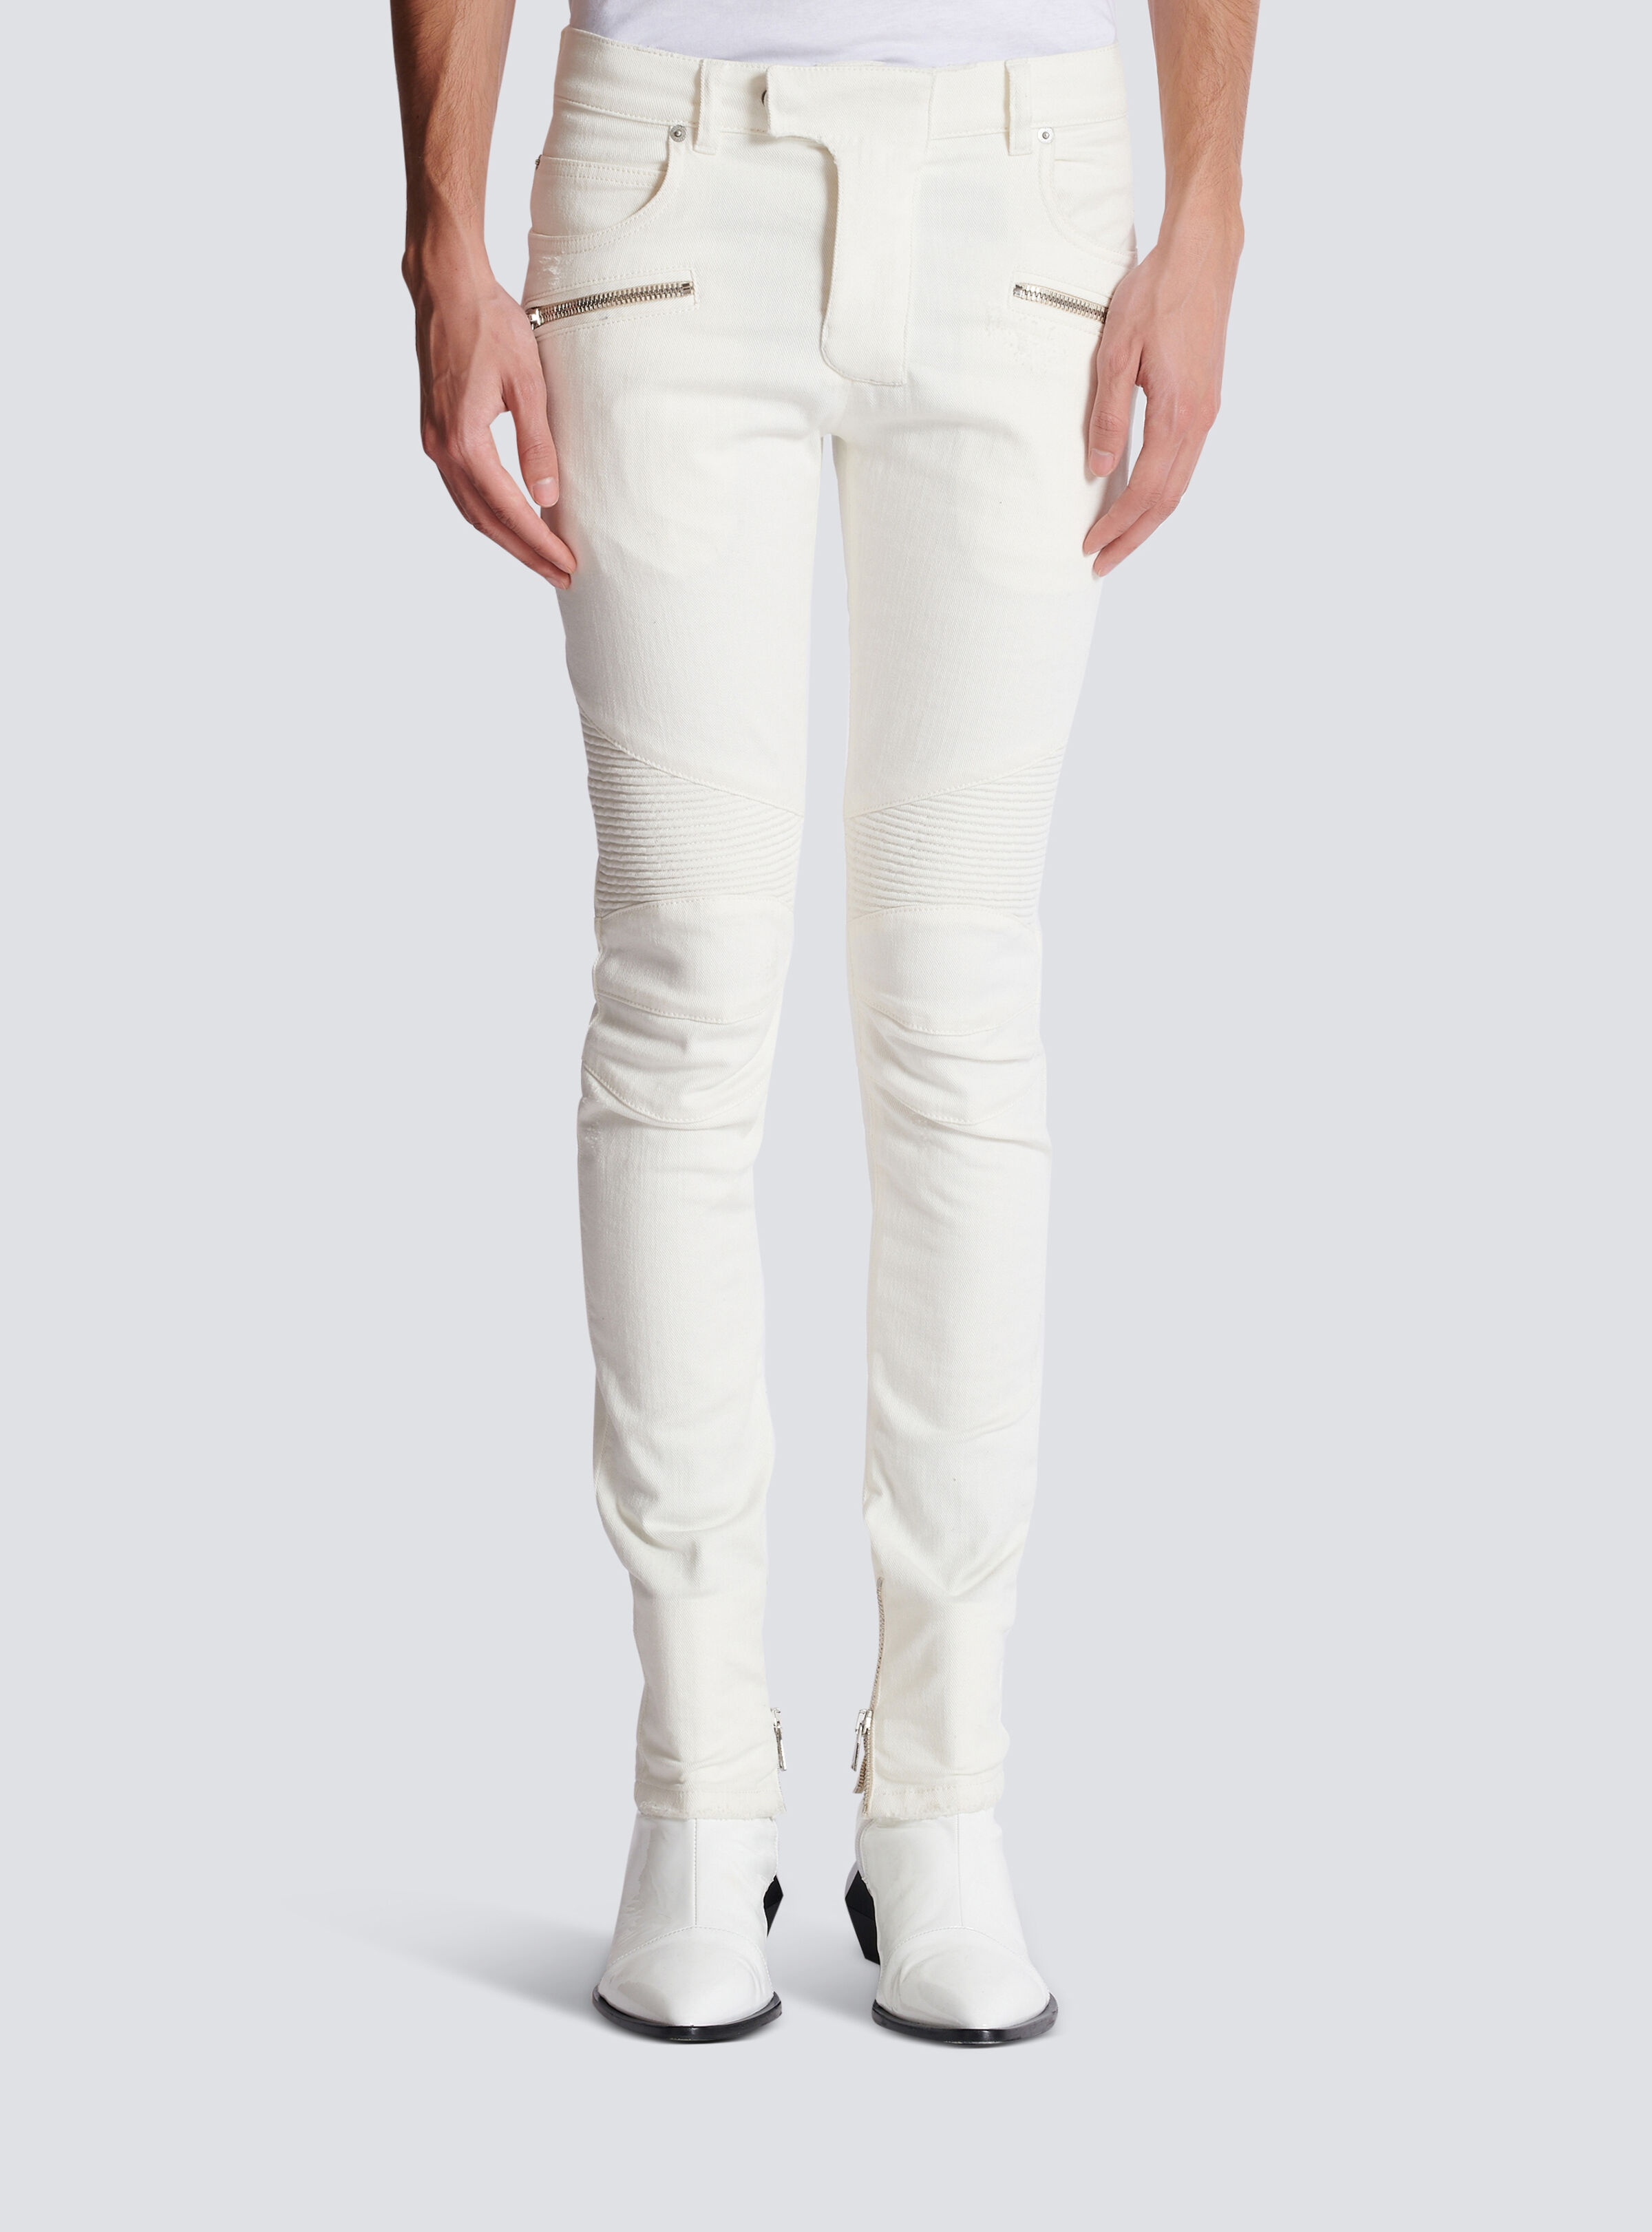 Biker jeans in white denim - 5